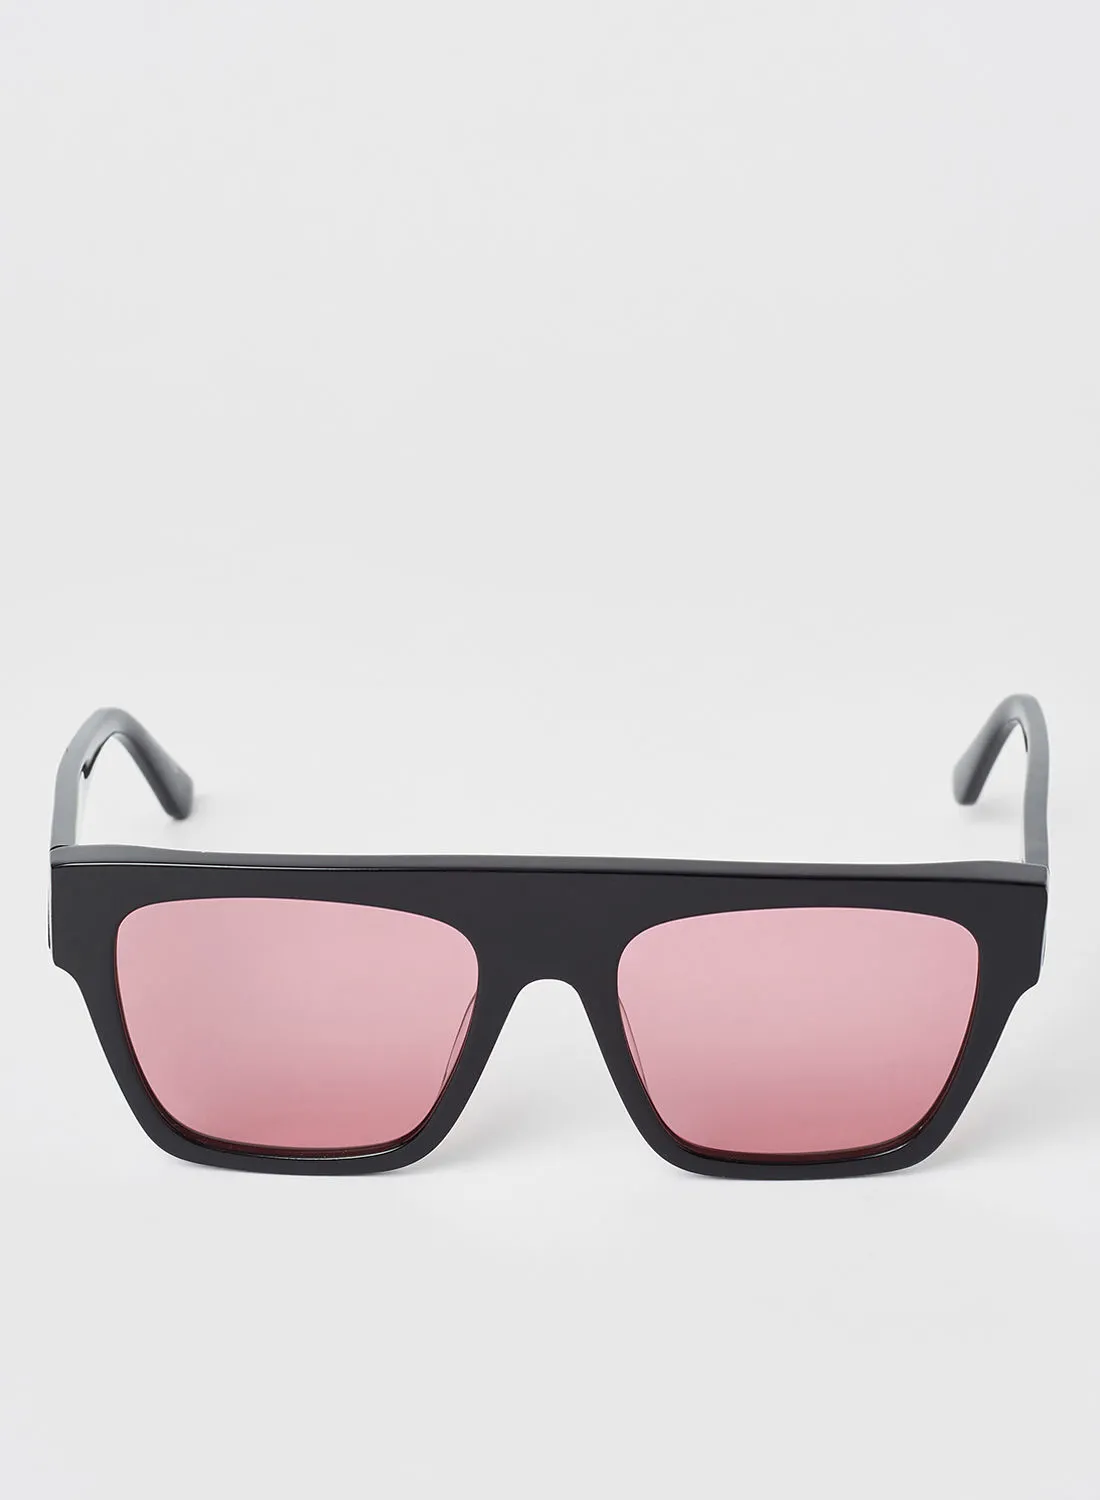 Karl Lagerfeld Women's Full Rim Acetate Modified Rectangle Sunglasses - Lens Size: 52 mm